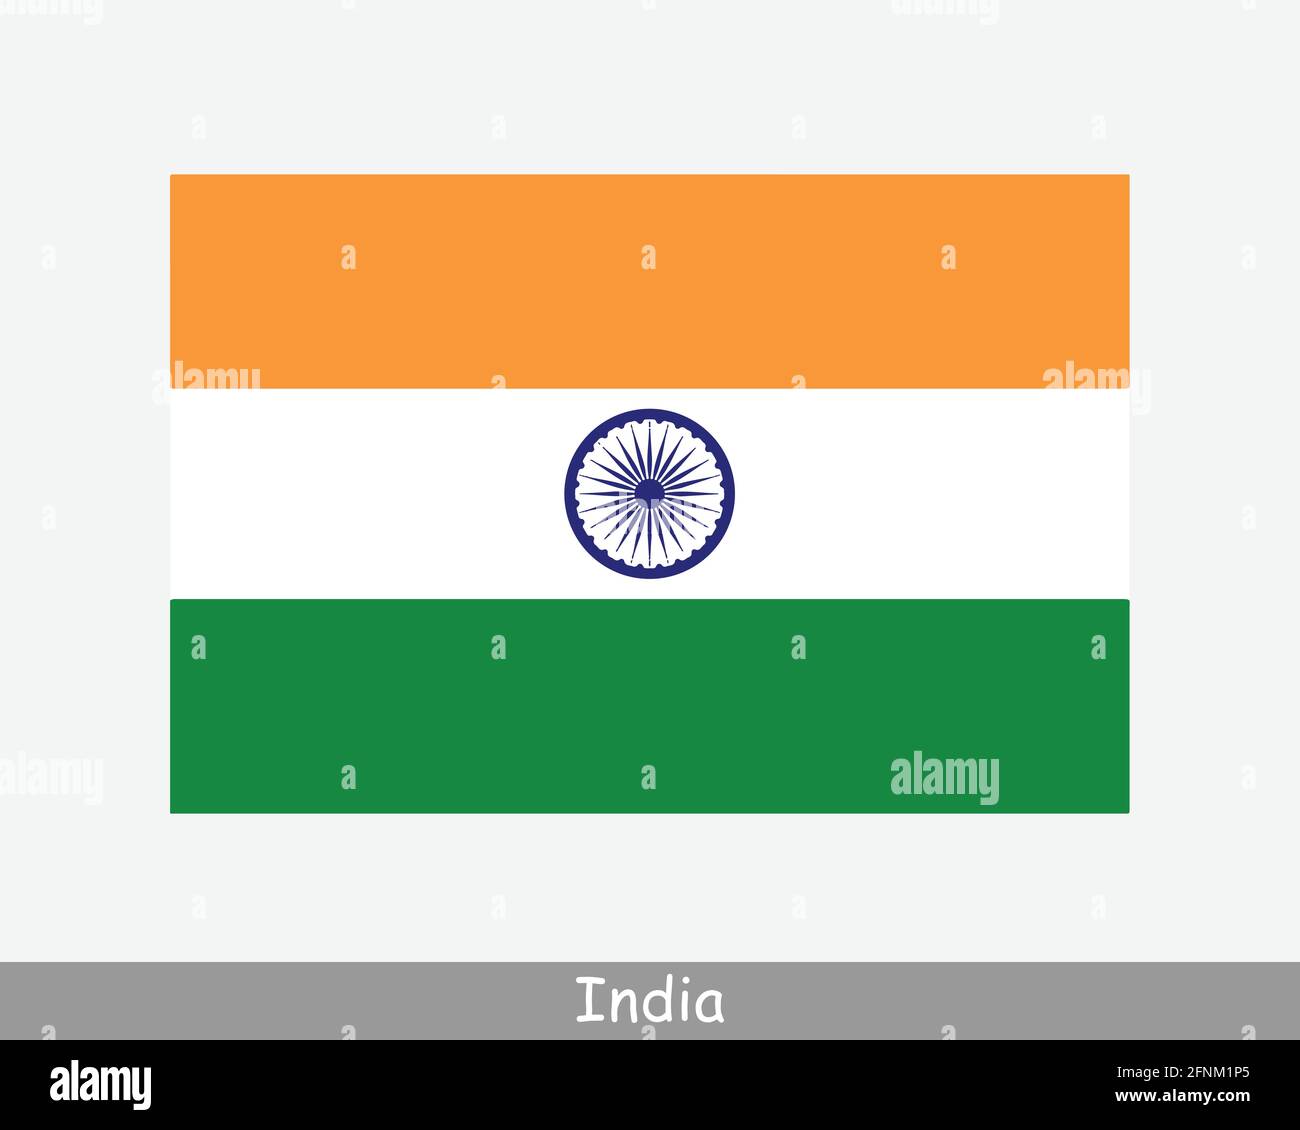 Nationale Flagge Indiens. Flagge Des Indischen Landes. Ausführliches Banner der Republik Indien. EPS-Vektorgrafik Datei ausschneiden Stock Vektor